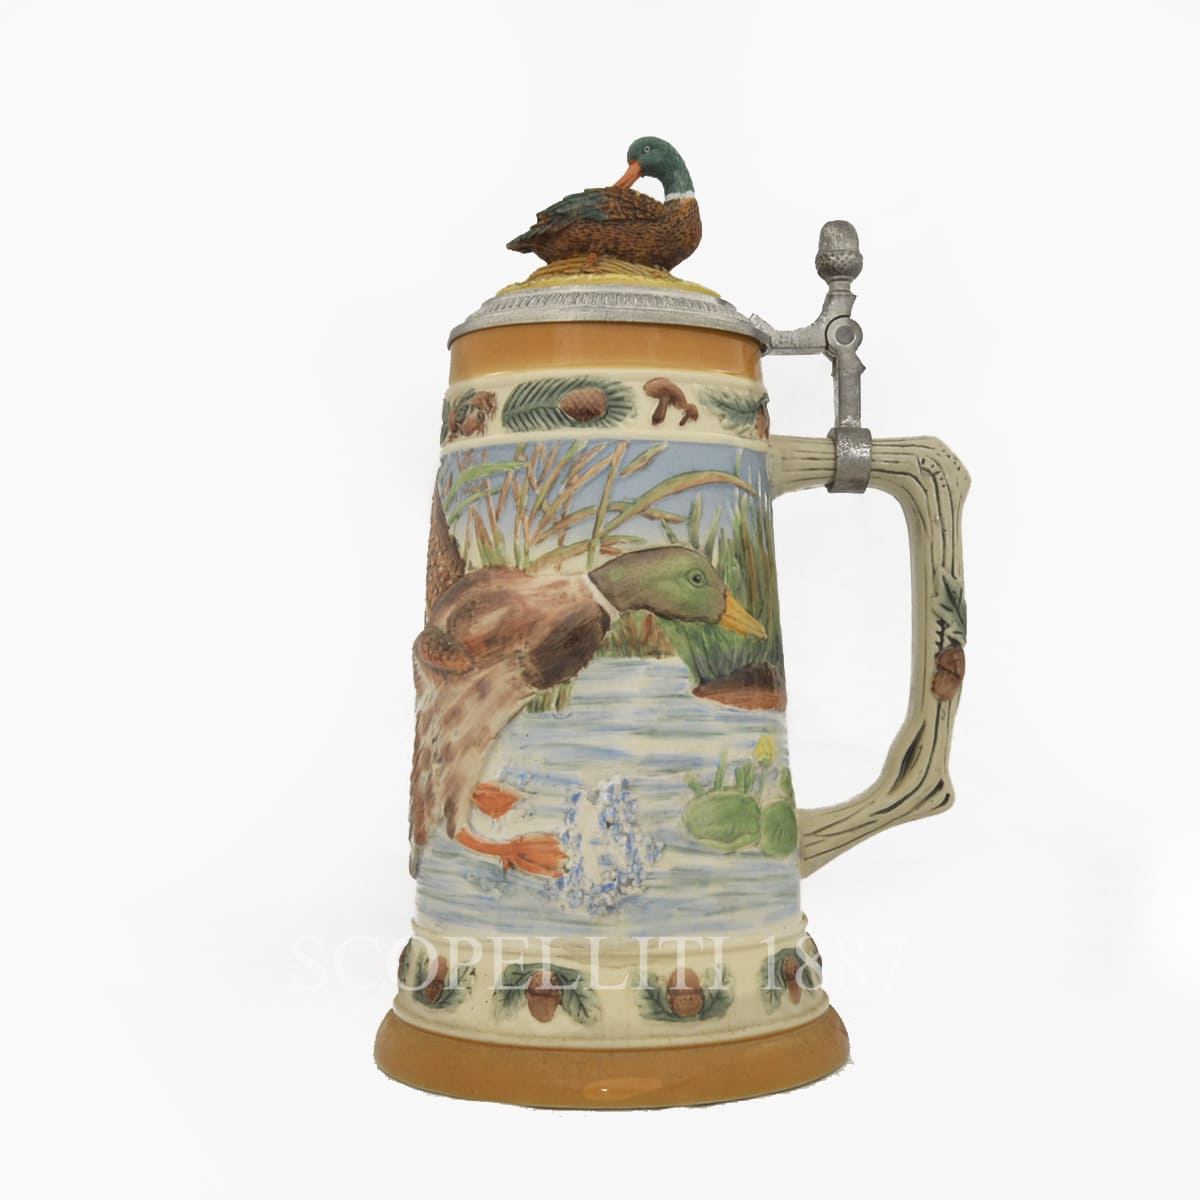 Amoy-Art Bicchieri Birra Boccale di Birra con Coperchio Regali Fatti a Mano Souvenirs Castello di Neuschwanstein Dipinto Sicurezza Alimentare Confezione Regalo 0.45 Litre